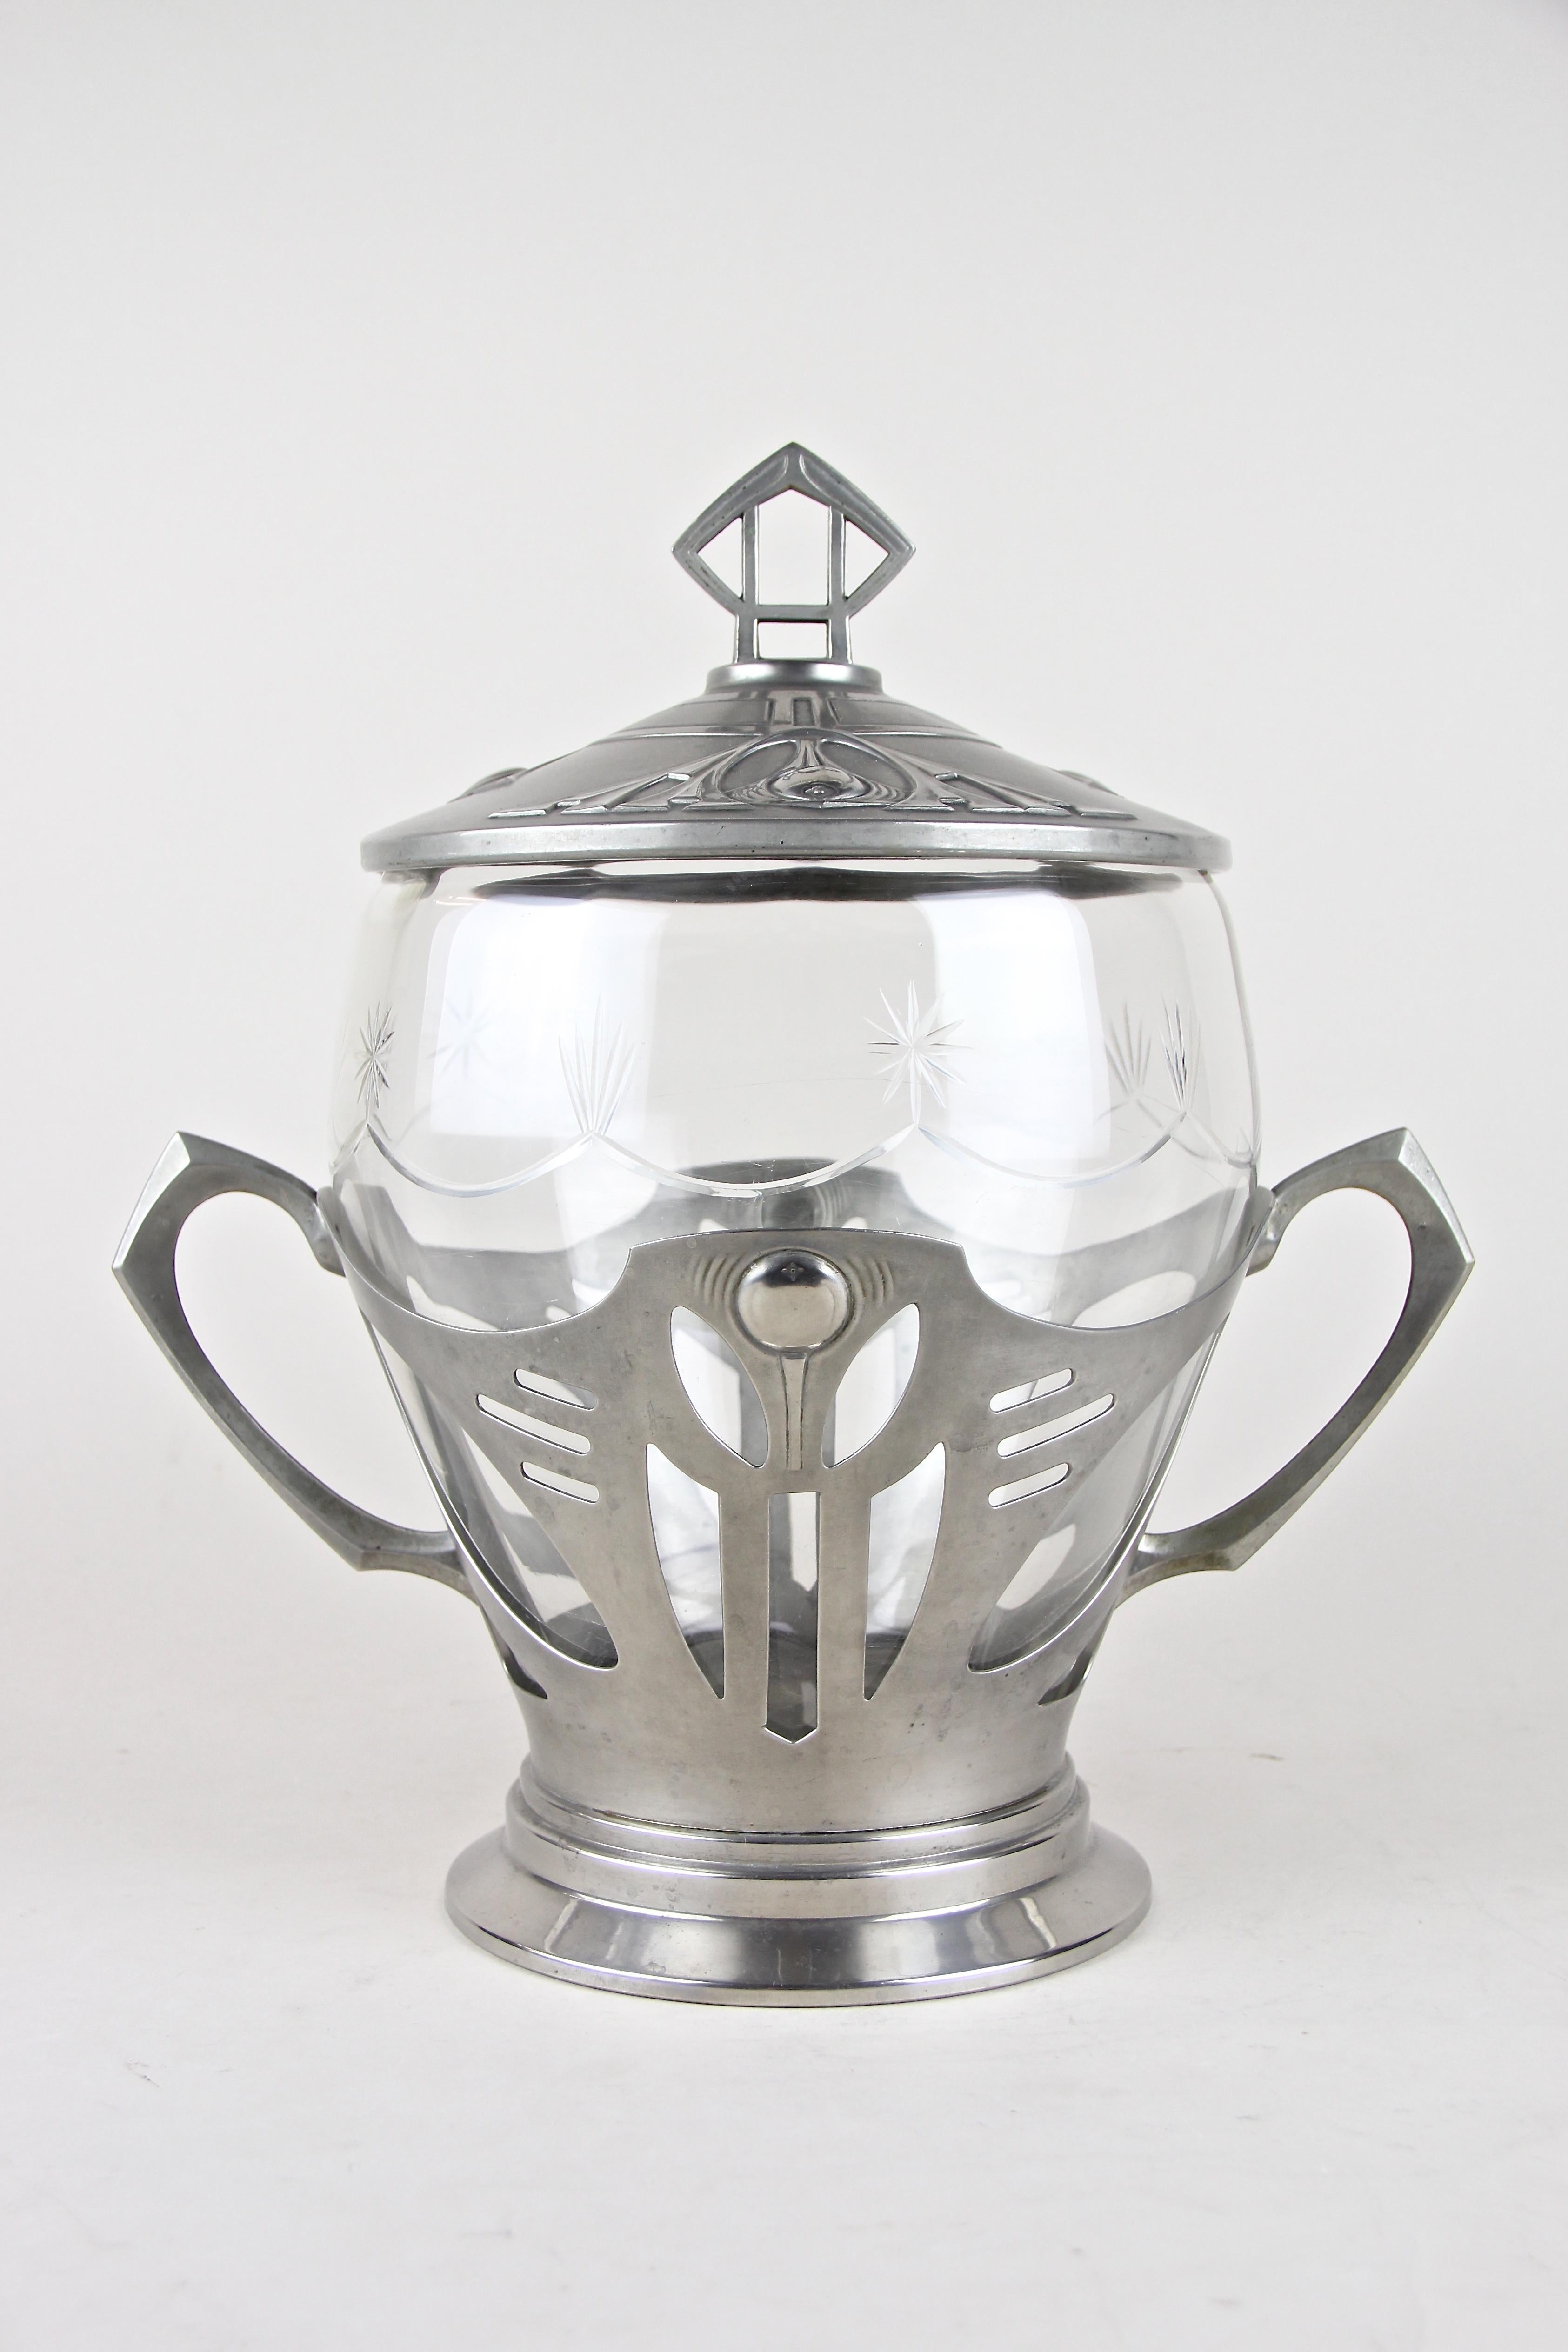 Joli bol à punch Art Nouveau d'Autriche, vers 1910. Le bol en verre poli fin repose dans un bol argenté et ajouré, impressionnant par le langage de conception Art nouveau renommé. Deux grandes poignées permettent de le transporter facilement dans le